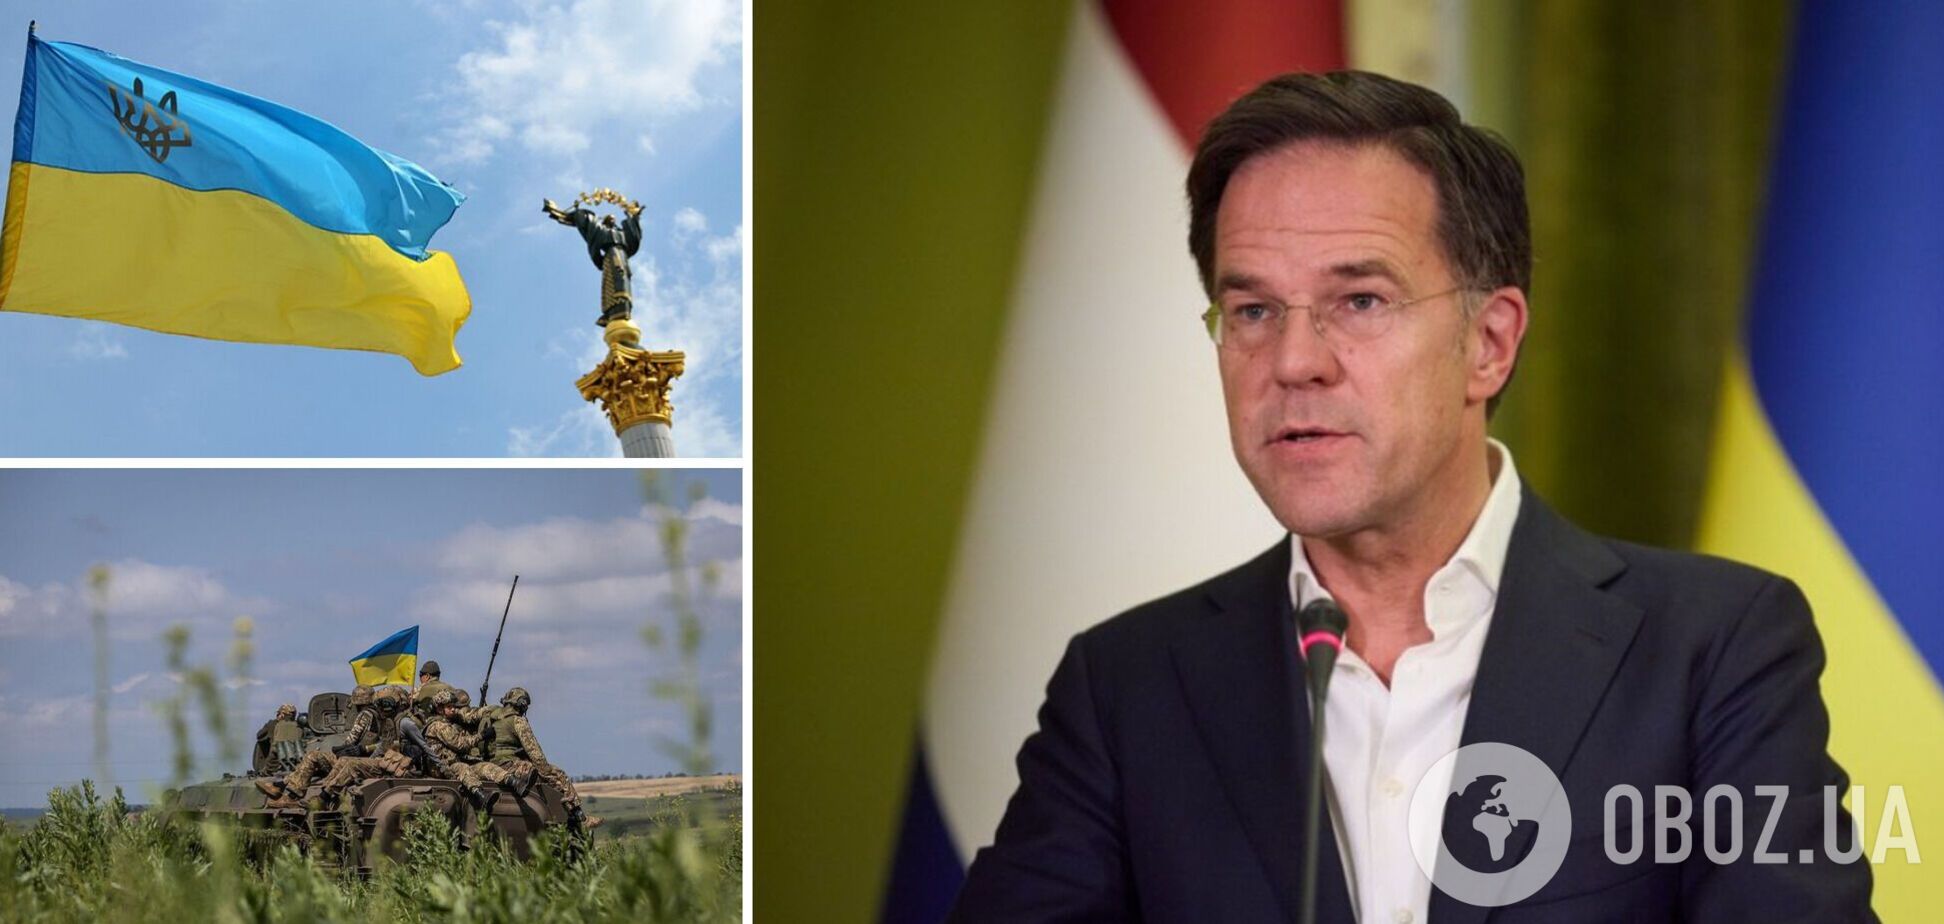 'Лише перемога України': прем'єр Нідерландів назвав єдине прийнятне завершення війни